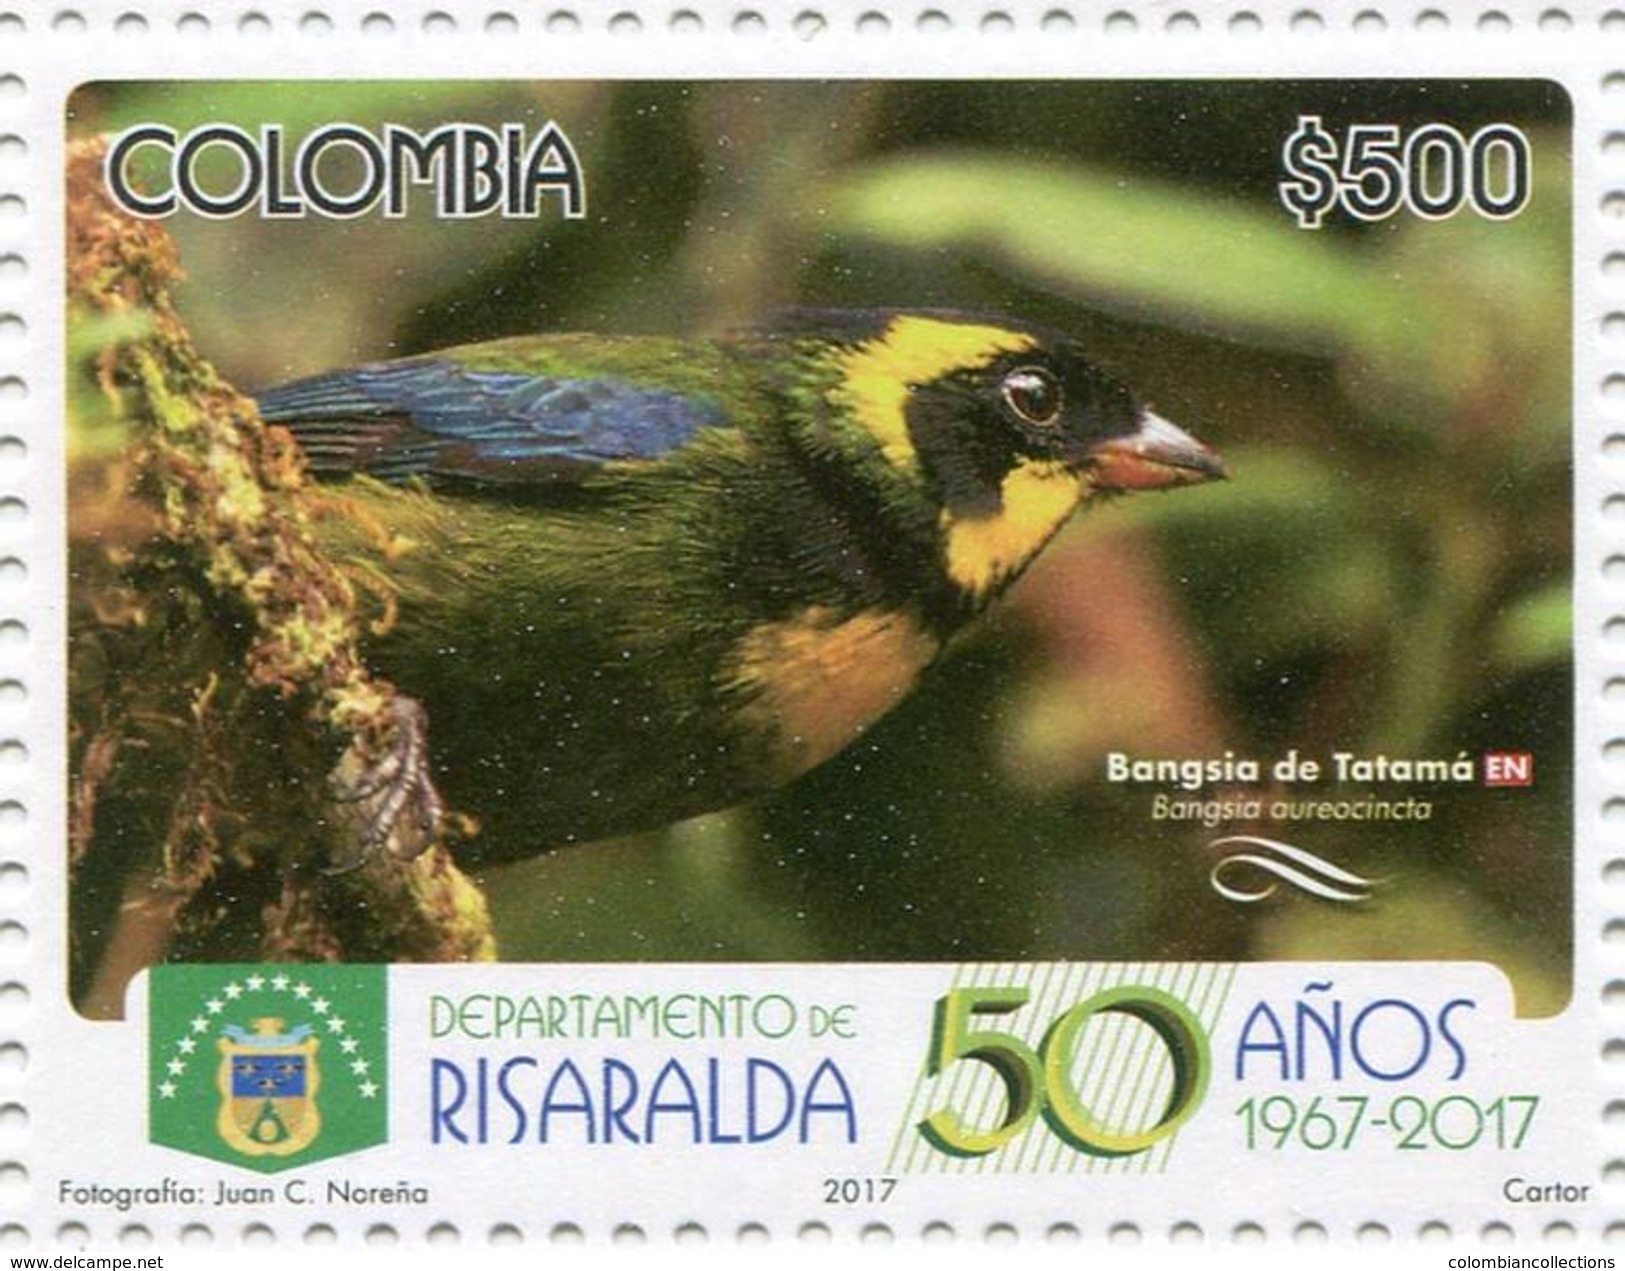 Lote 2017-3.1, Colombia, 2017, Sello, Stamp, Departamento De Risaralda 50 Años 1967-2017, Bird, Bangsia De Tatama, Ave - Colombia